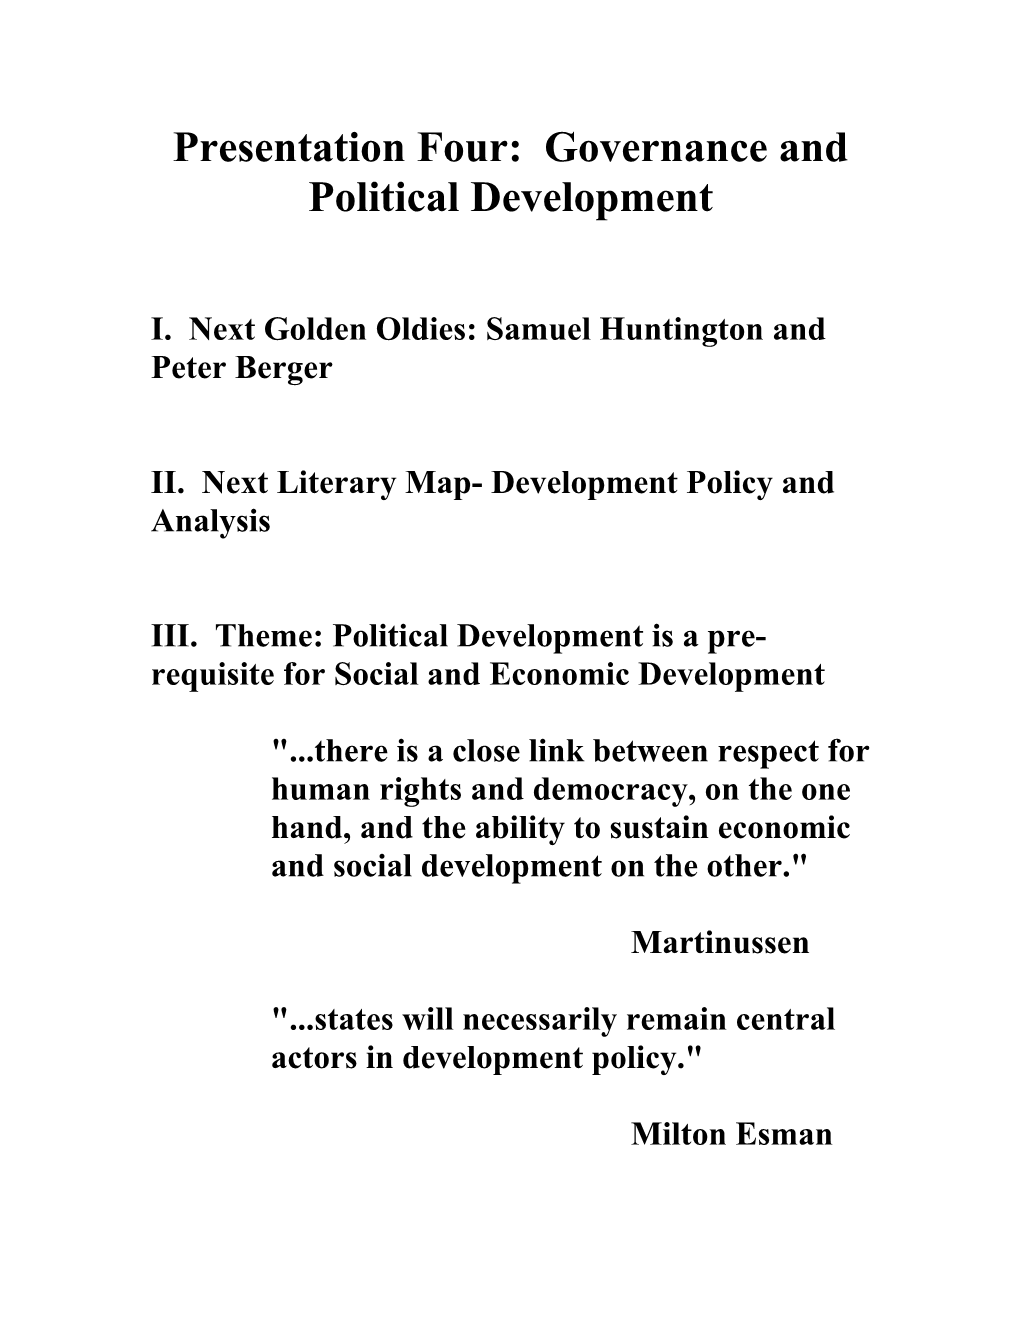 Presentation Four: Governance and Political Development